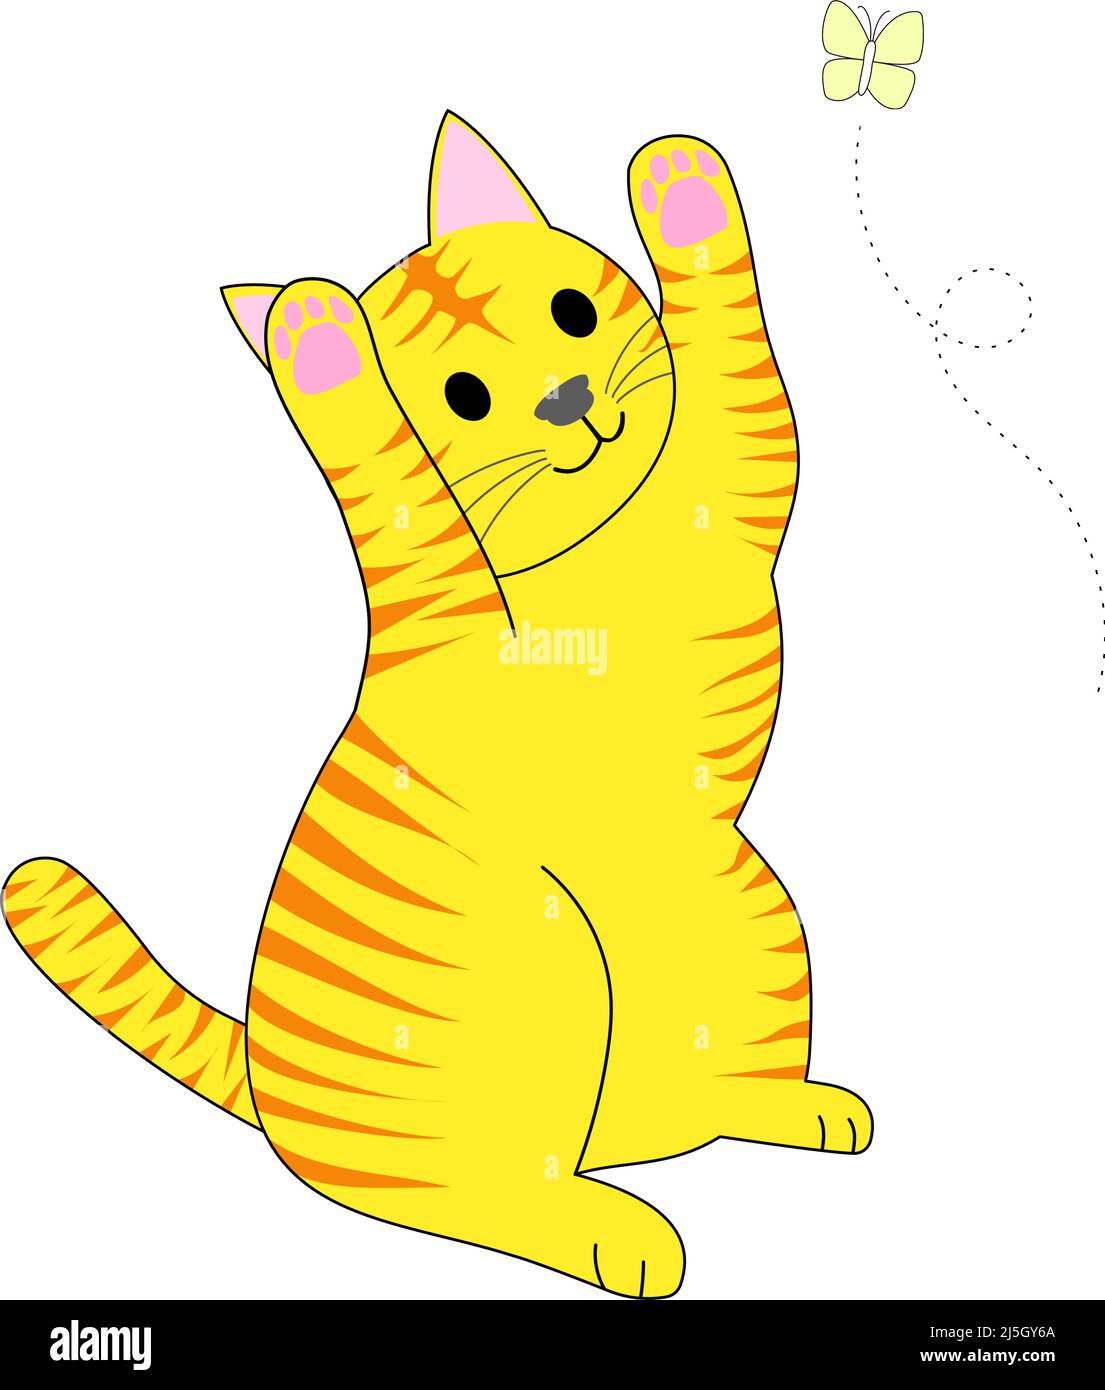 Un Gato Tabby Jugando Y Una Mariposa Amarilla Voladora Con Fondo Blanco Imagen Vector De Stock 